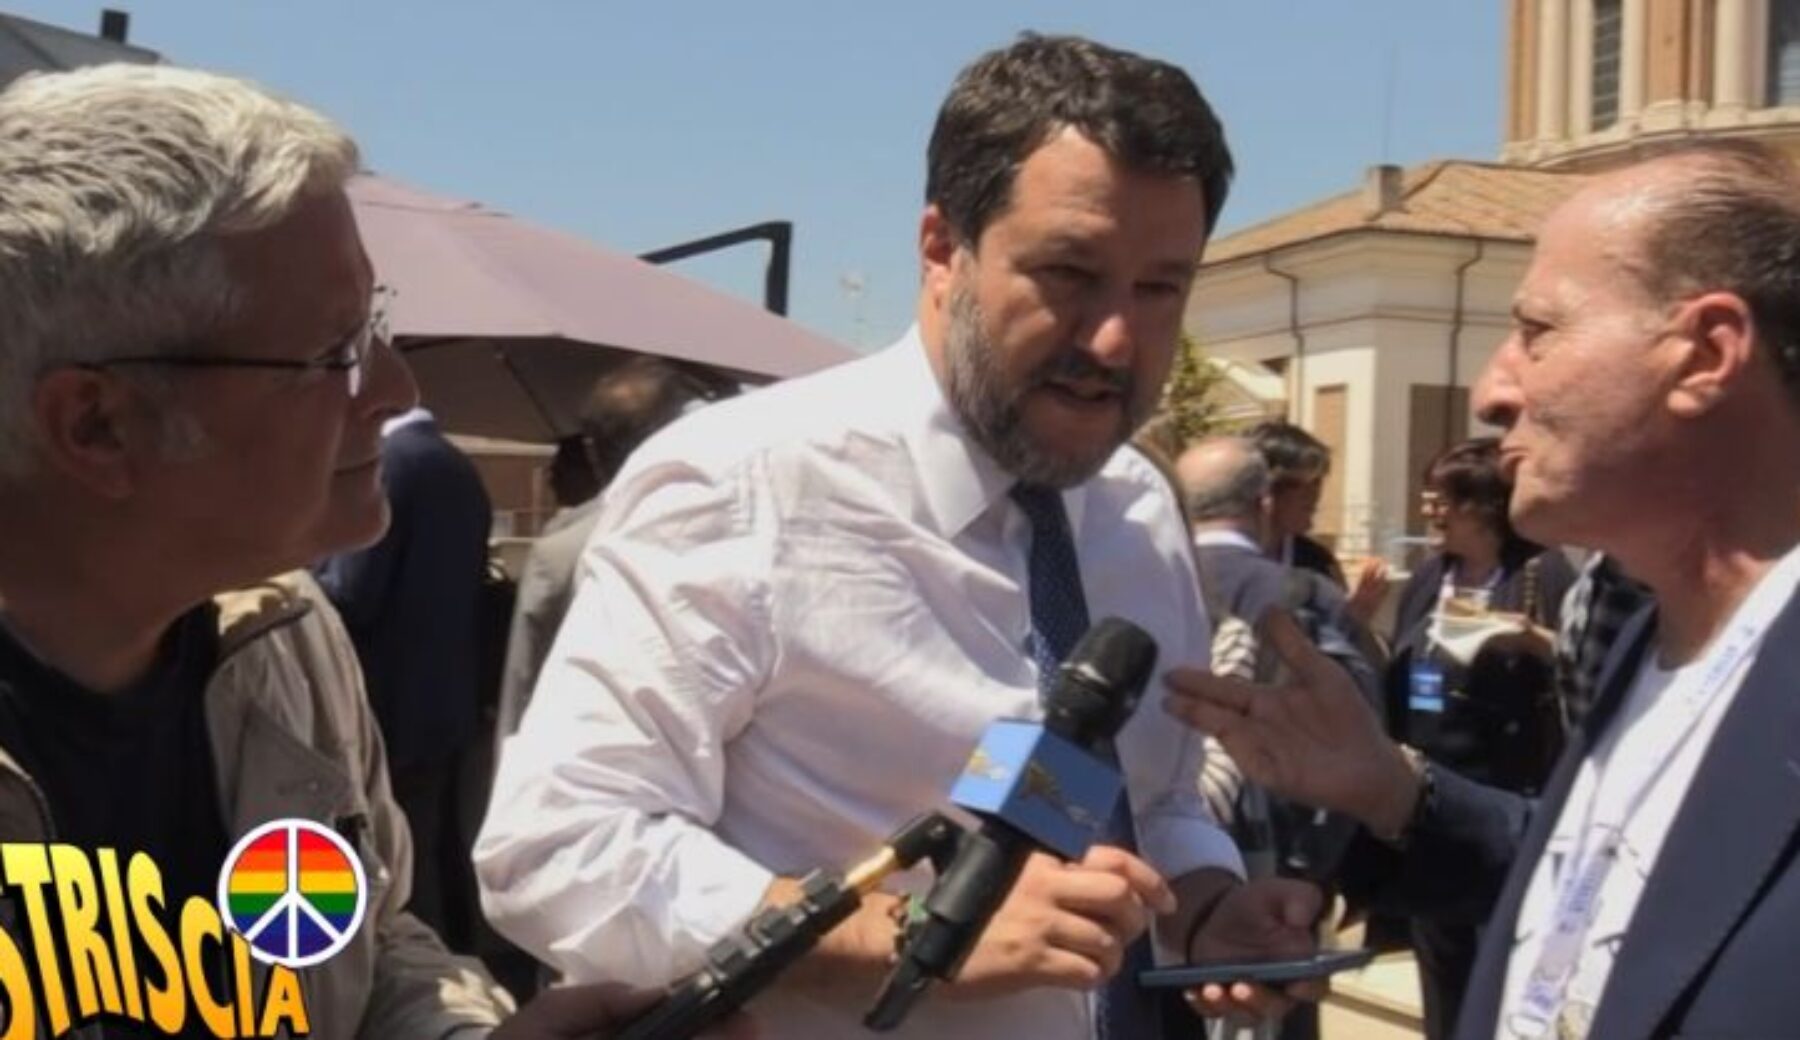 “Mariano Apicella ha tradito Silvio per Salvini”: ma è una gag di Enrico Lucci